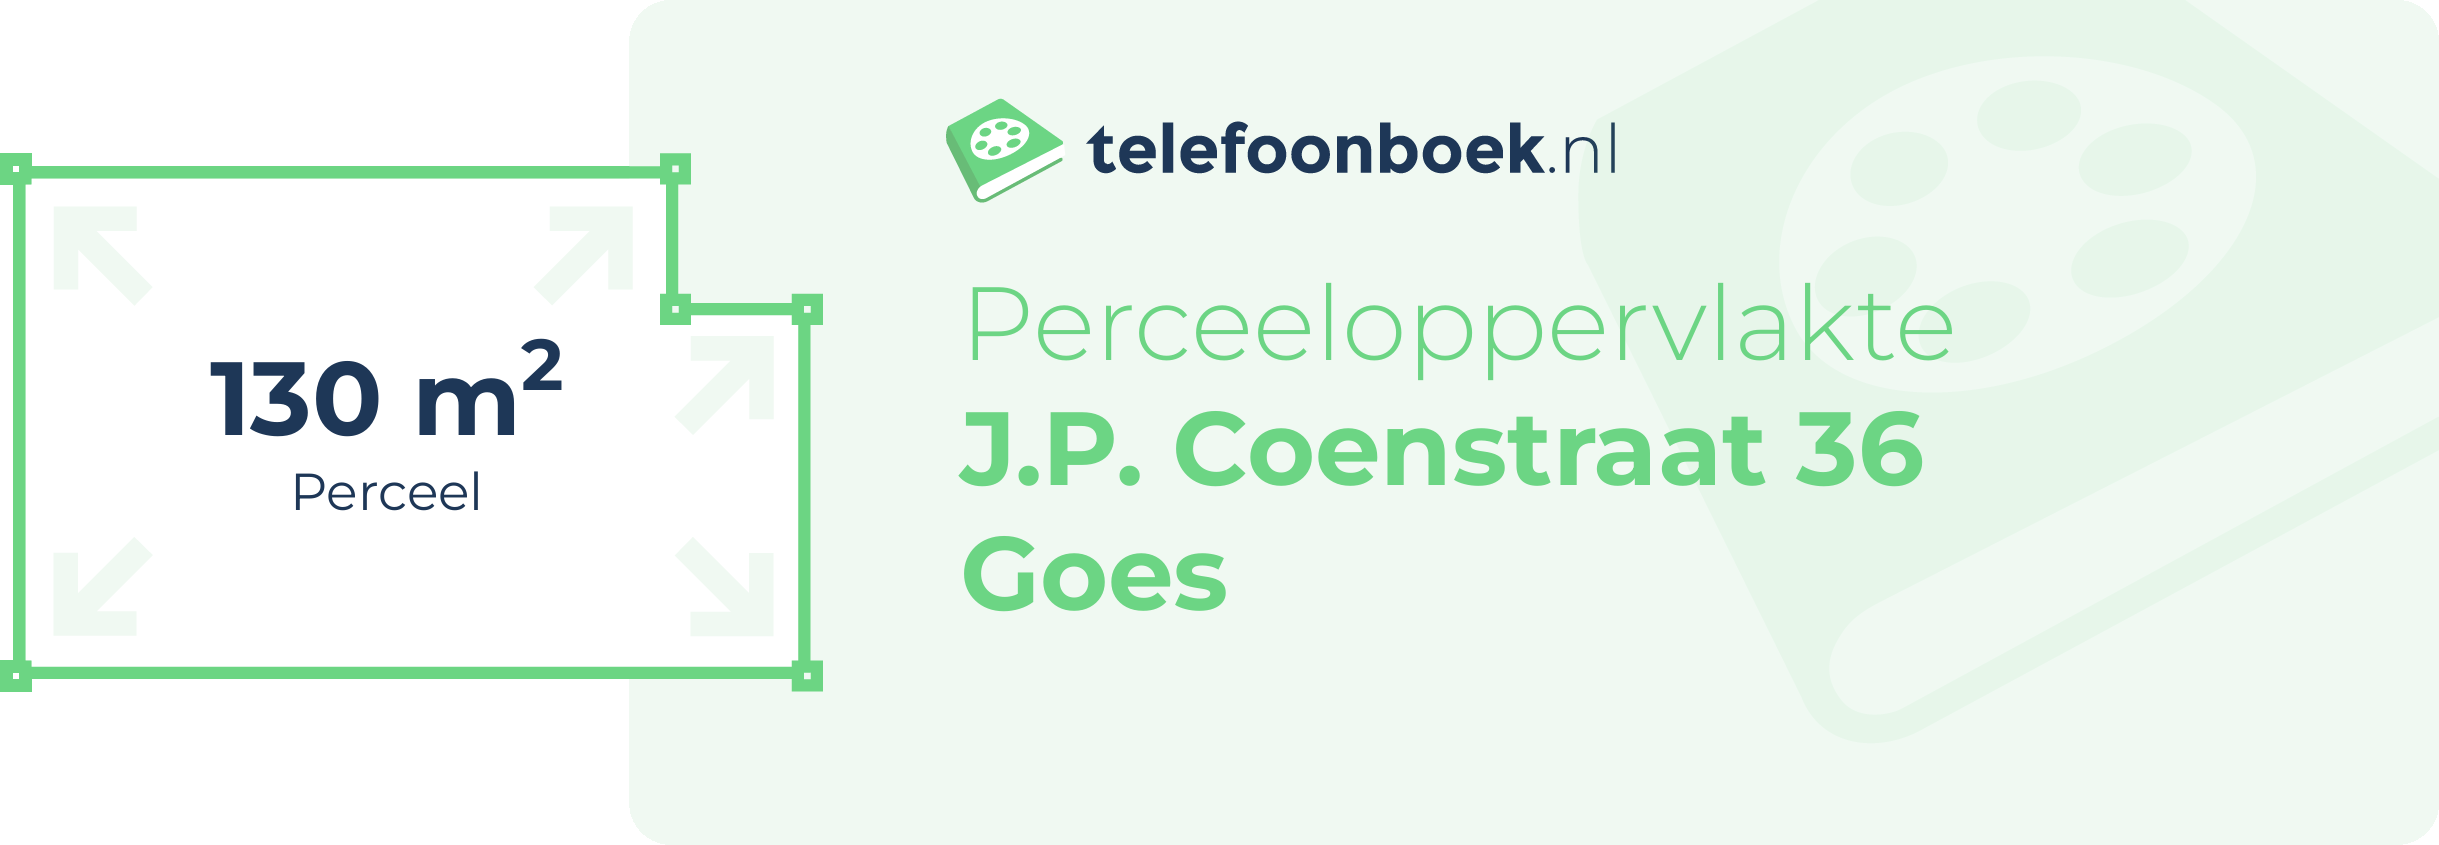 Perceeloppervlakte J.P. Coenstraat 36 Goes